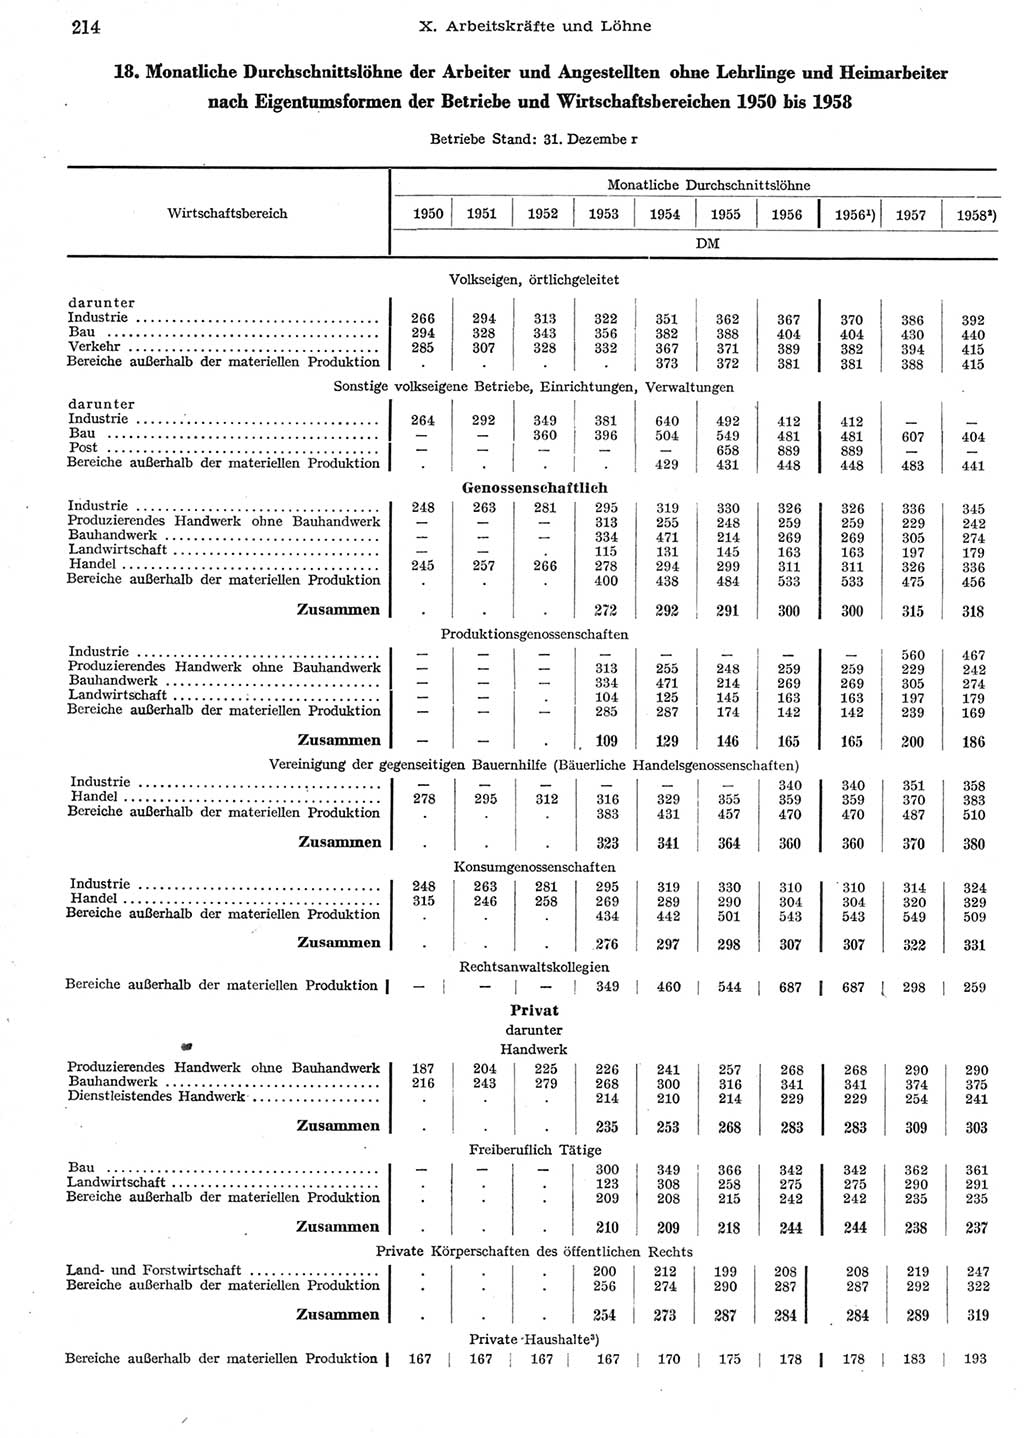 Statistisches Jahrbuch der Deutschen Demokratischen Republik (DDR) 1958, Seite 214 (Stat. Jb. DDR 1958, S. 214)